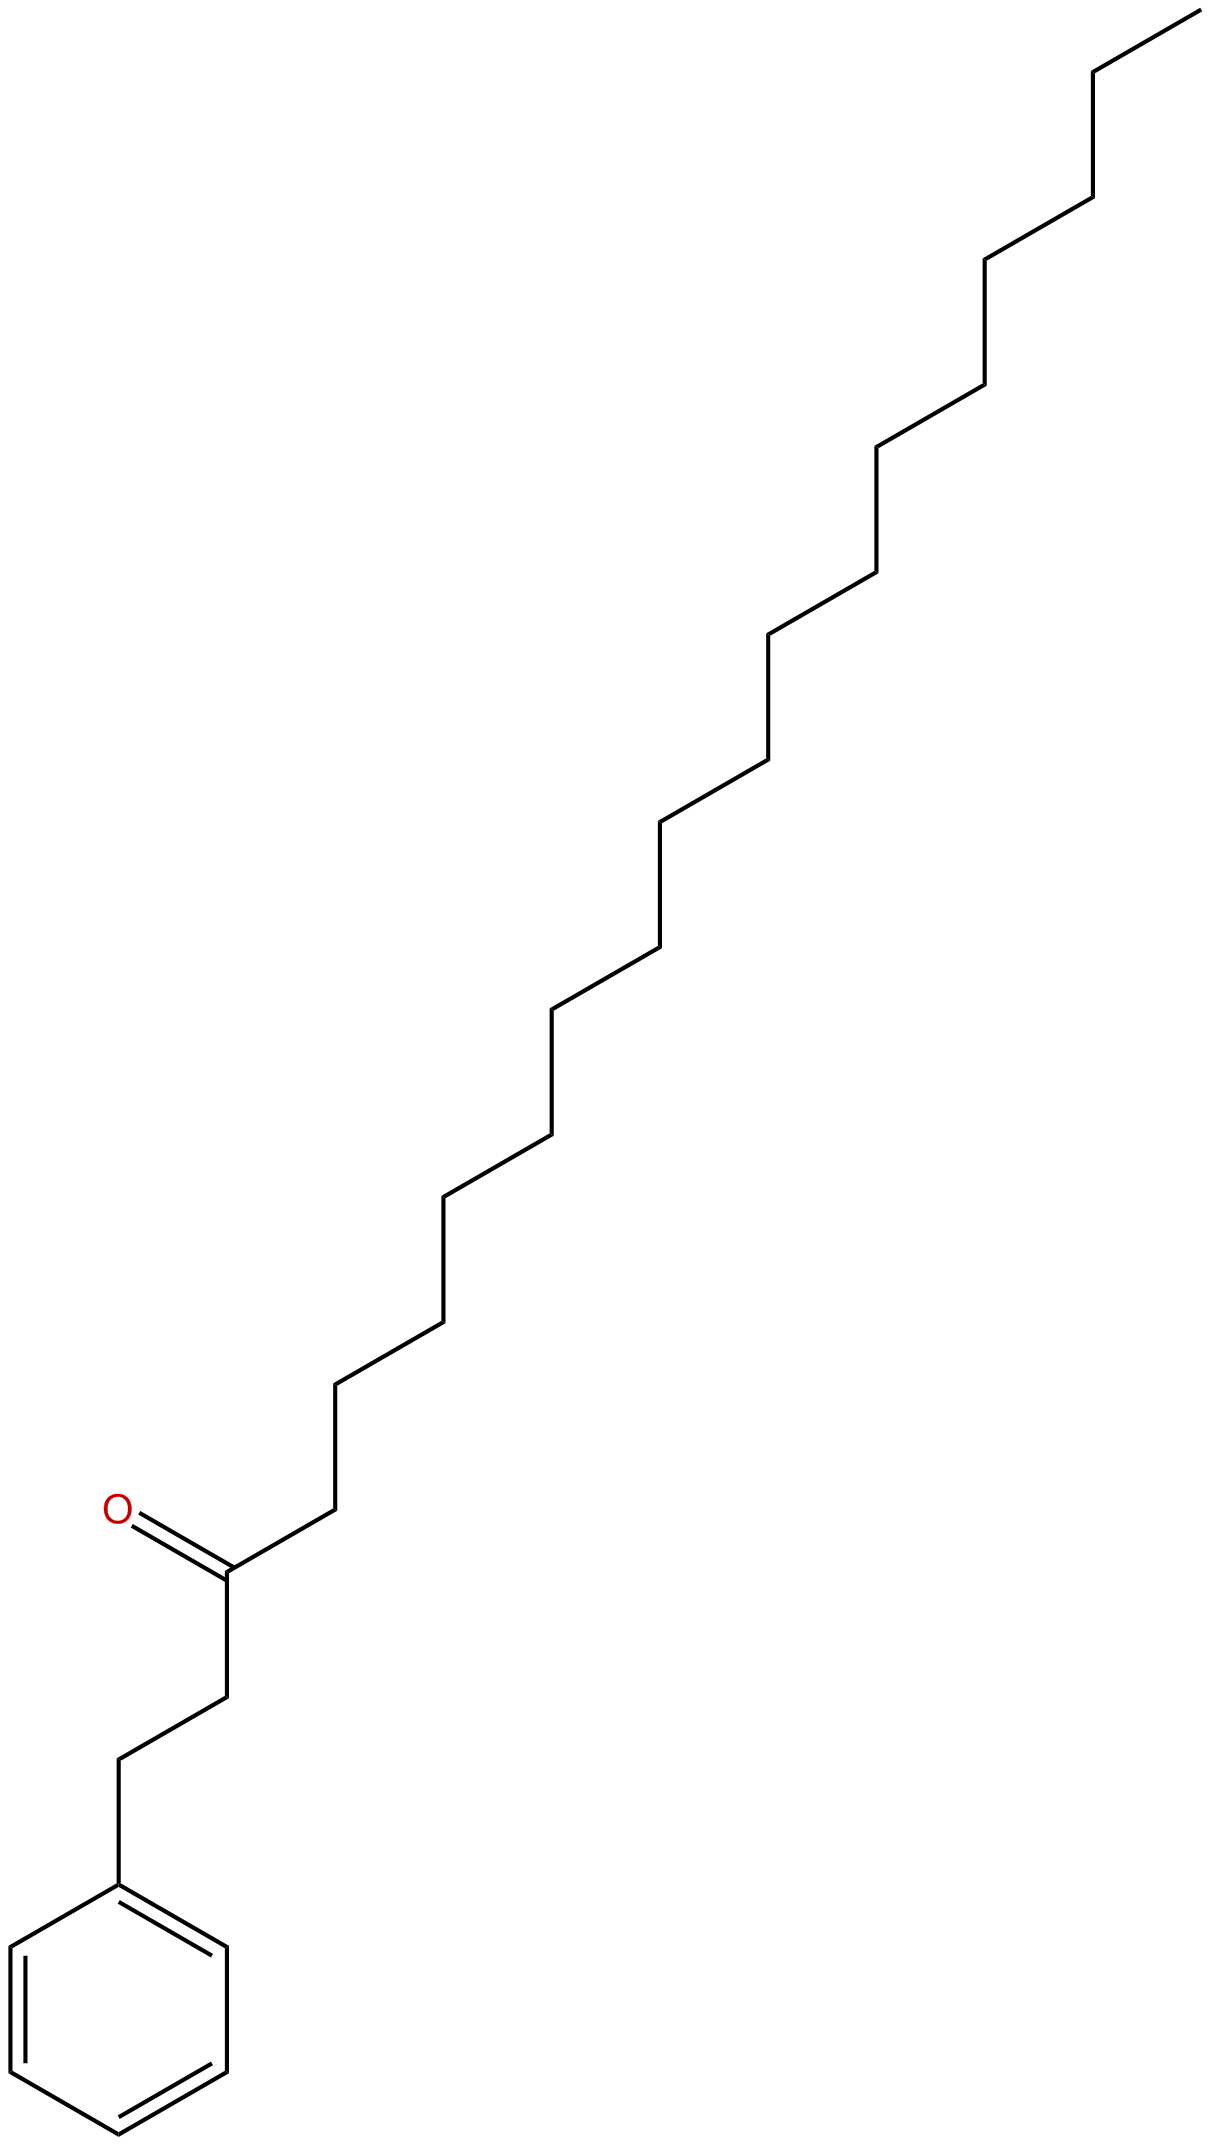 Image of 1-phenyl-3-eicosanone